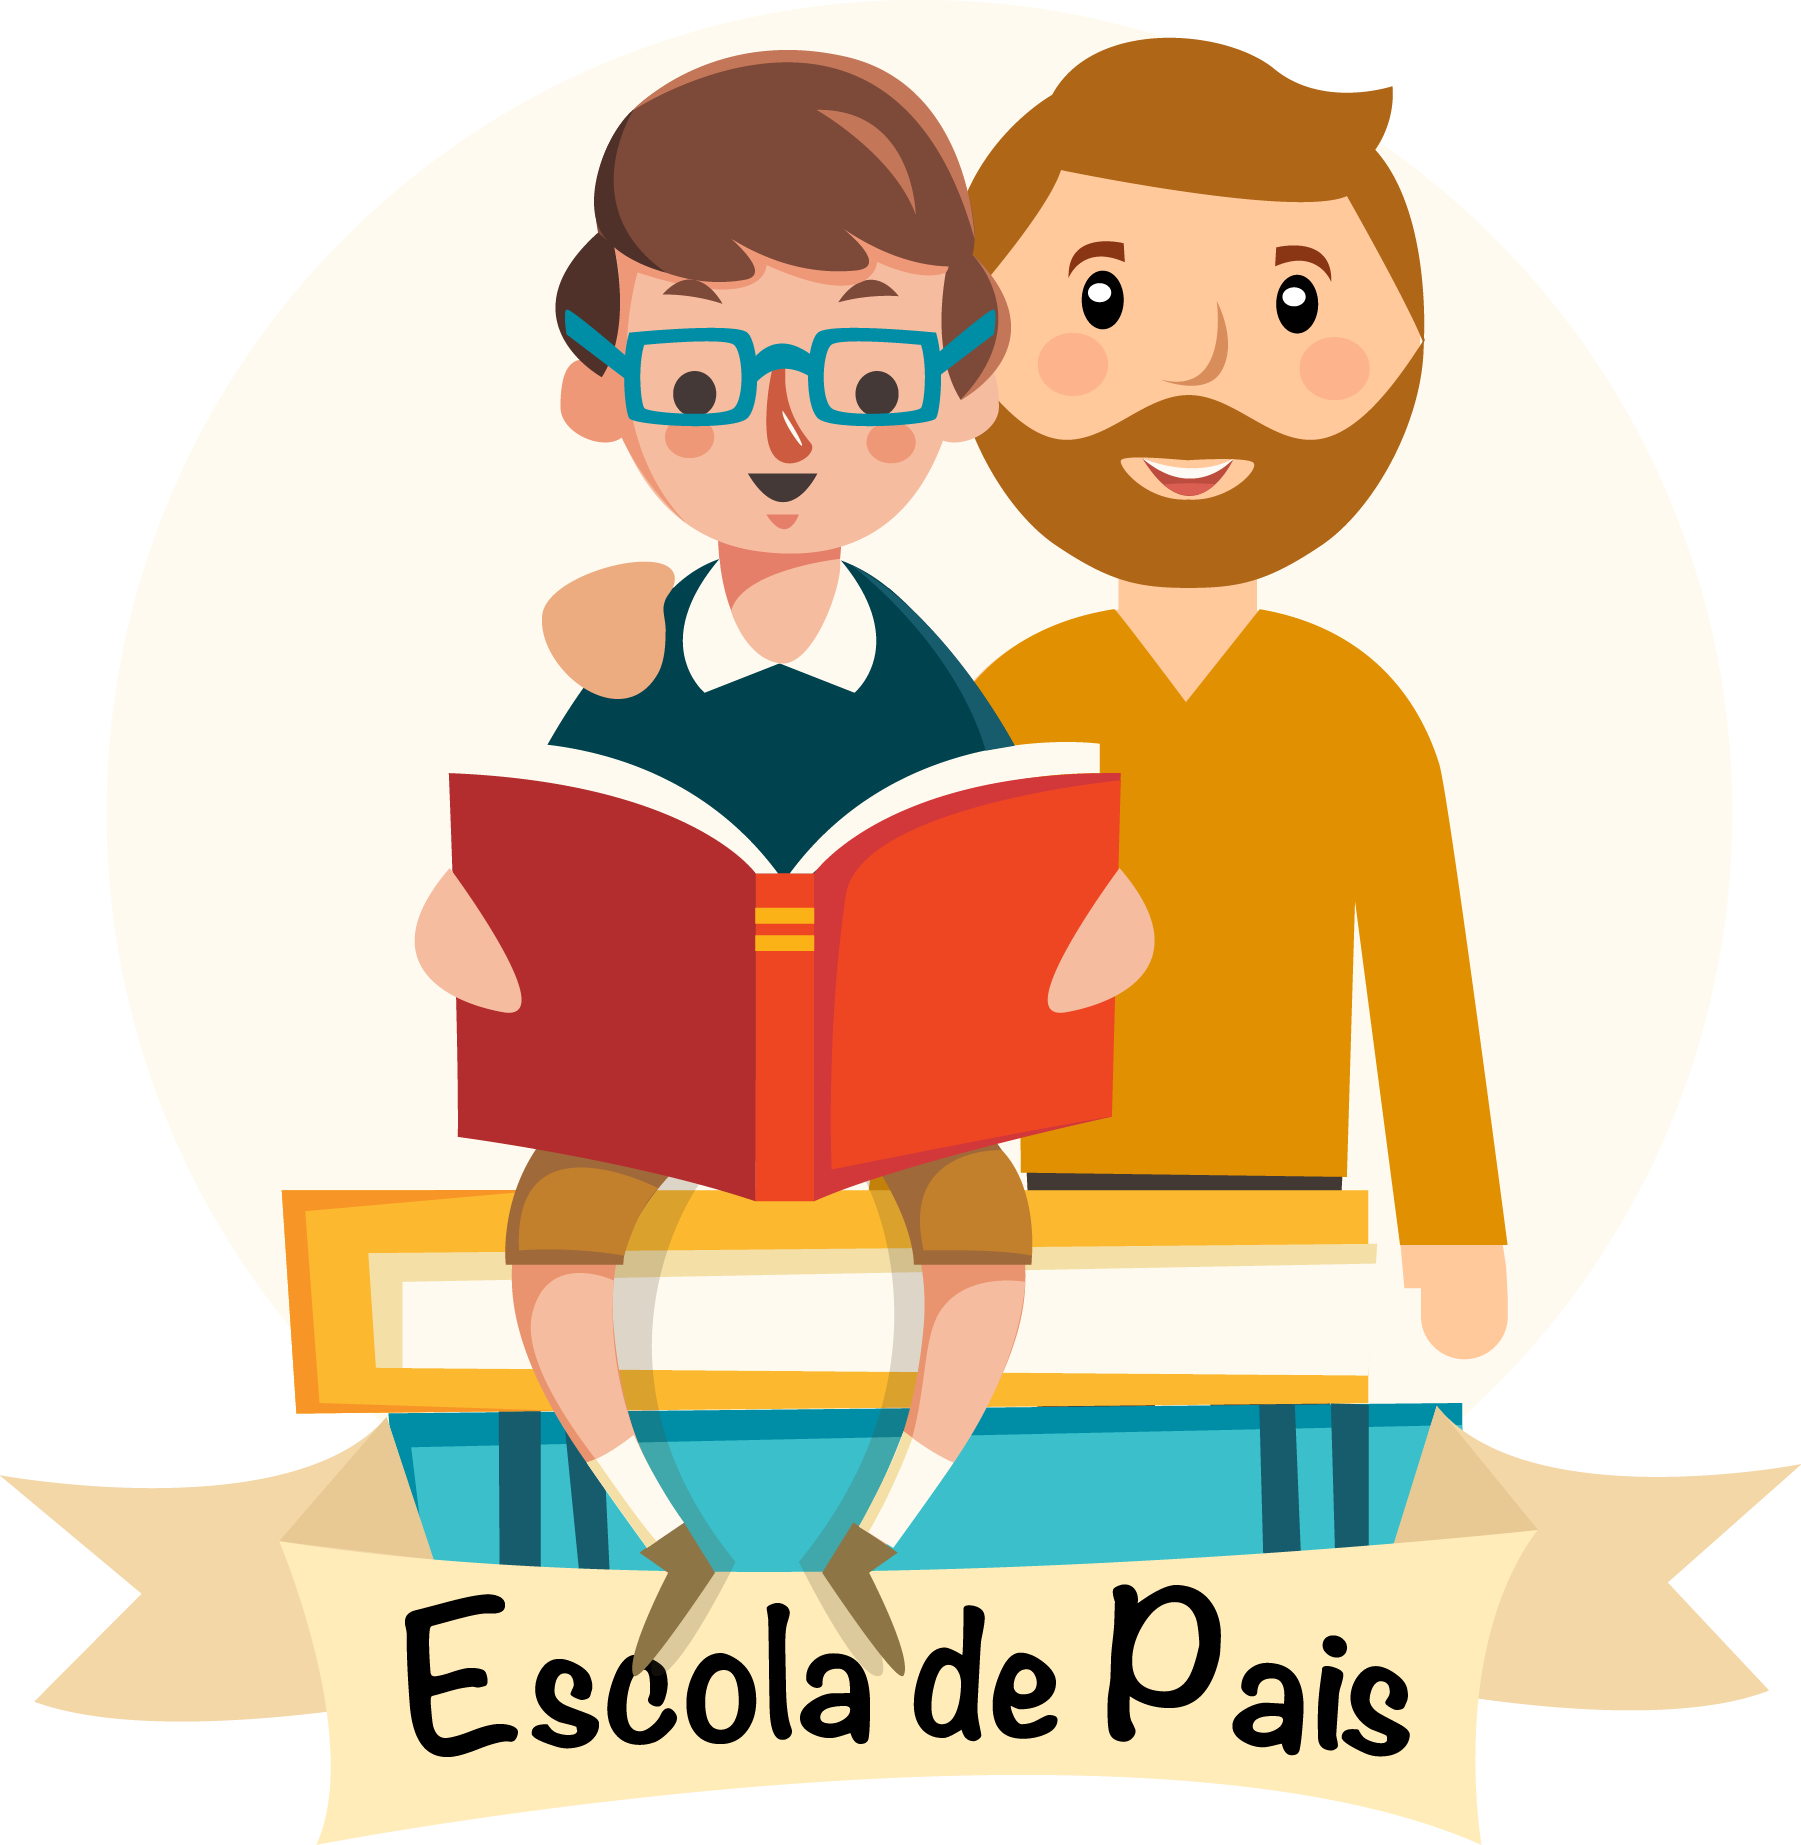 No momento você está vendo Conheça o projeto social “Escola de Pais” que vem transformando a vida de famílias brasilienses